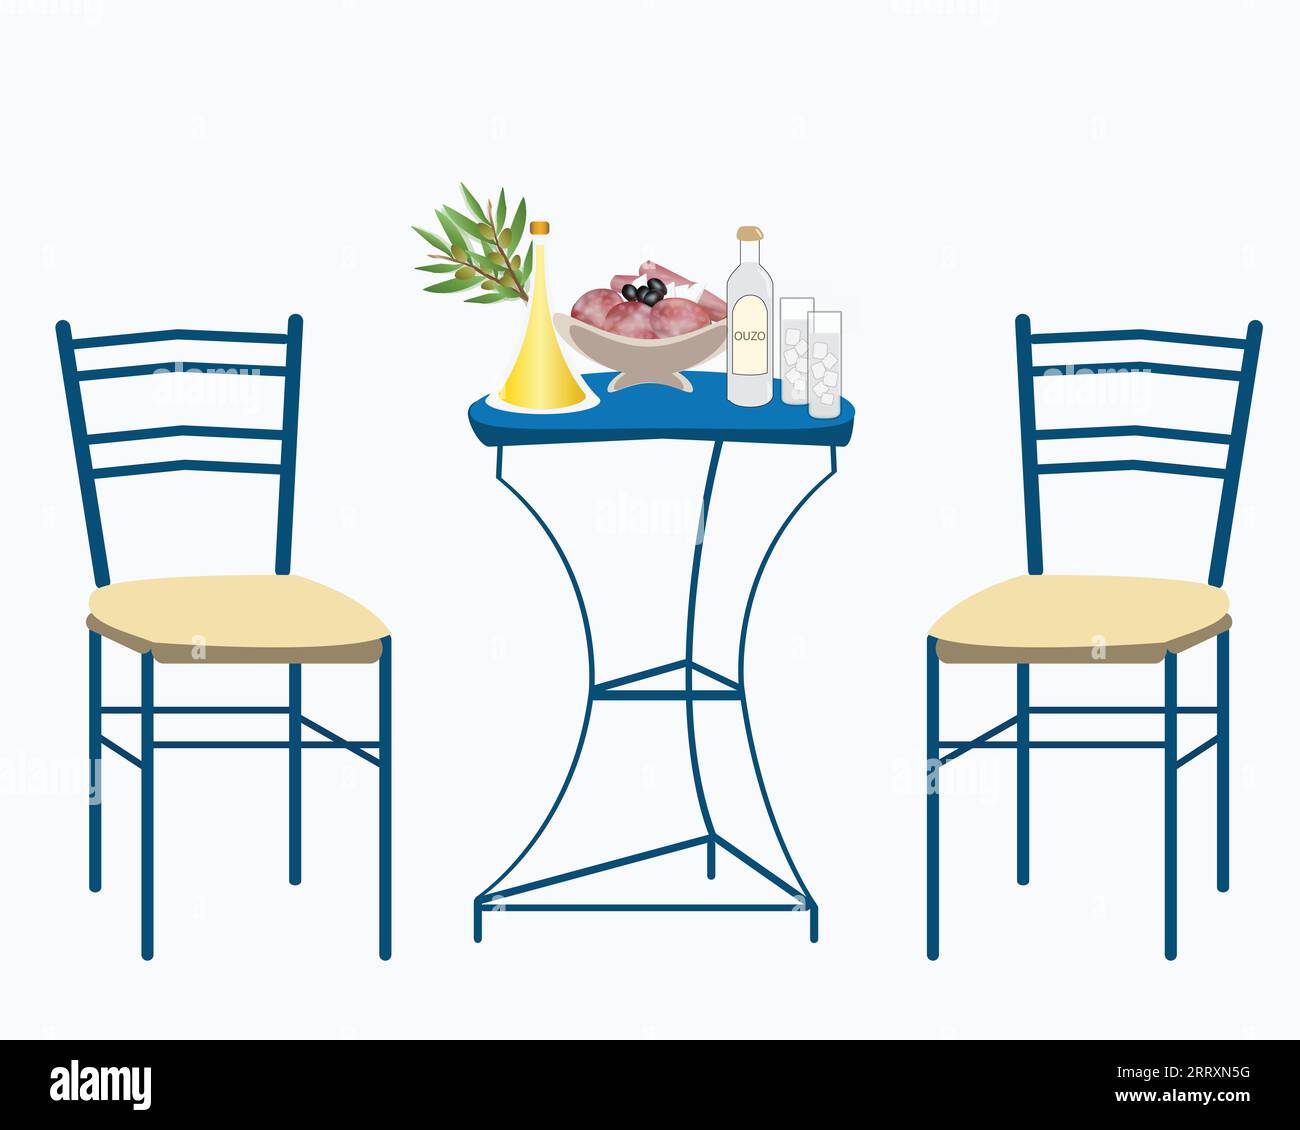 Vektor-Illustration eines traditionellen griechischen Hofes - Tisch und Stuhl mit Ouzo, Wurst und Olivenöl Stock Vektor